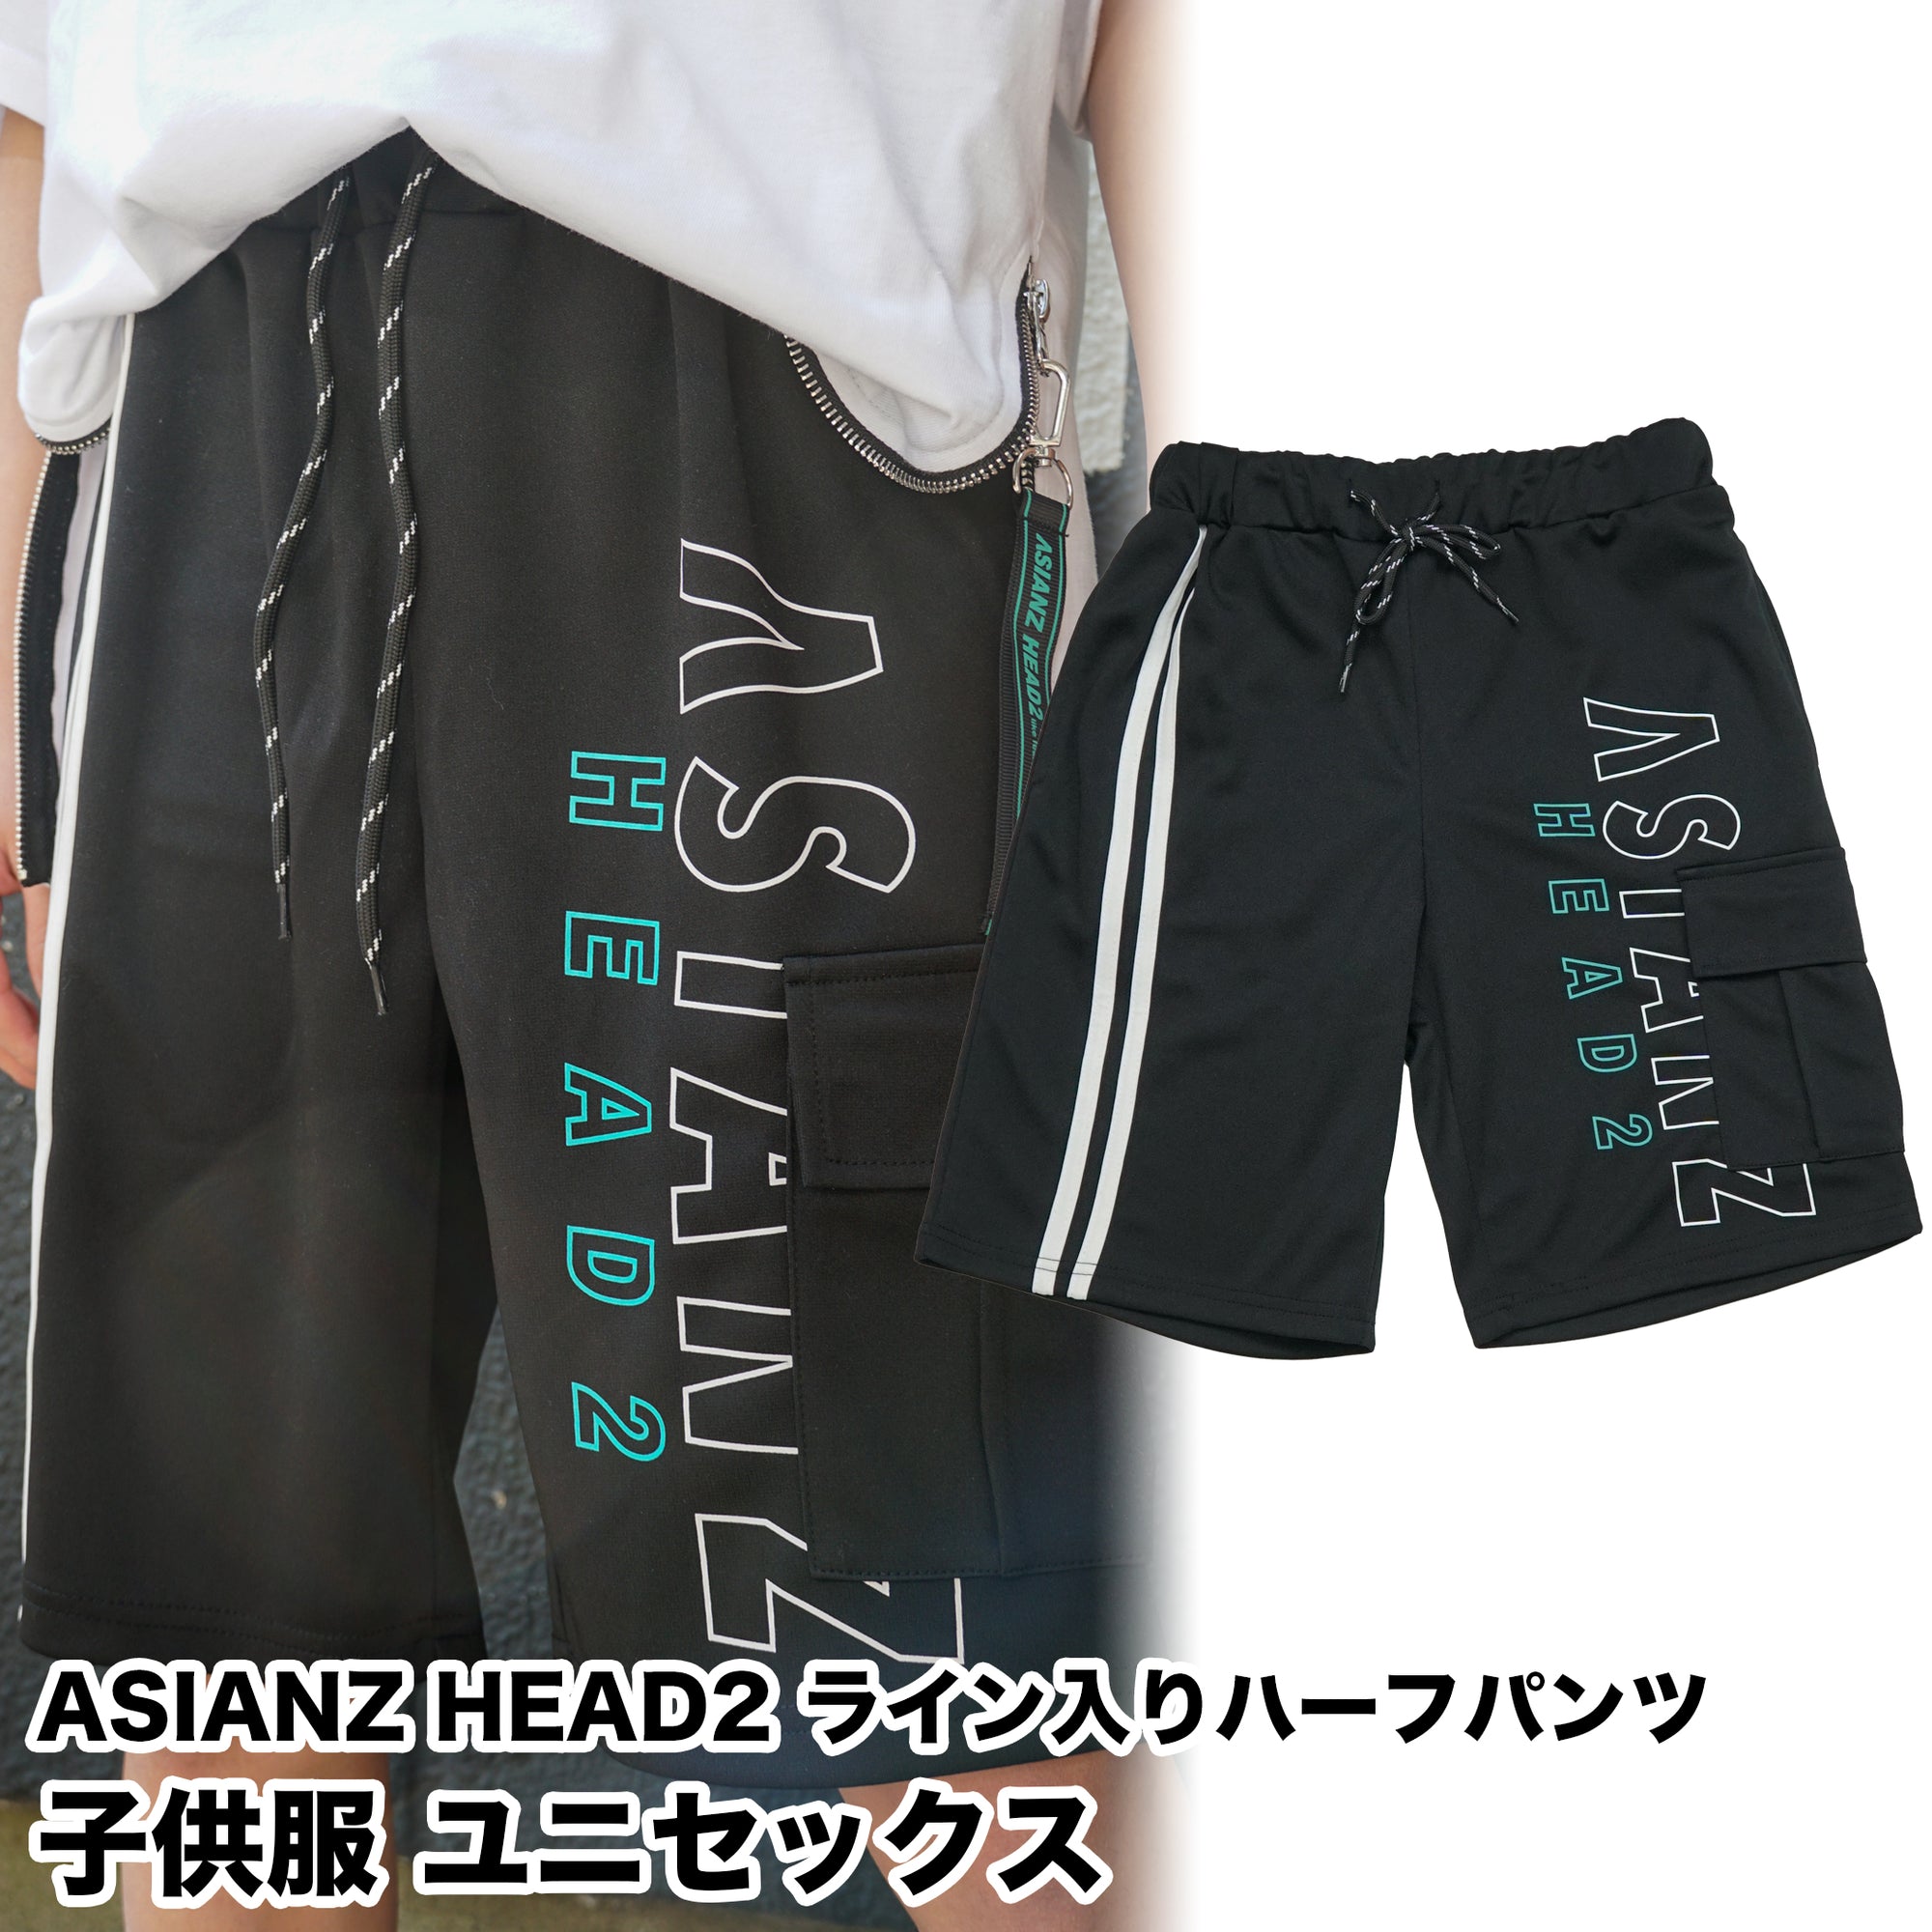 (40%オフ! セール商品)ASIANZ HEAD2 ライン入りハーフパンツ キッズウェアー